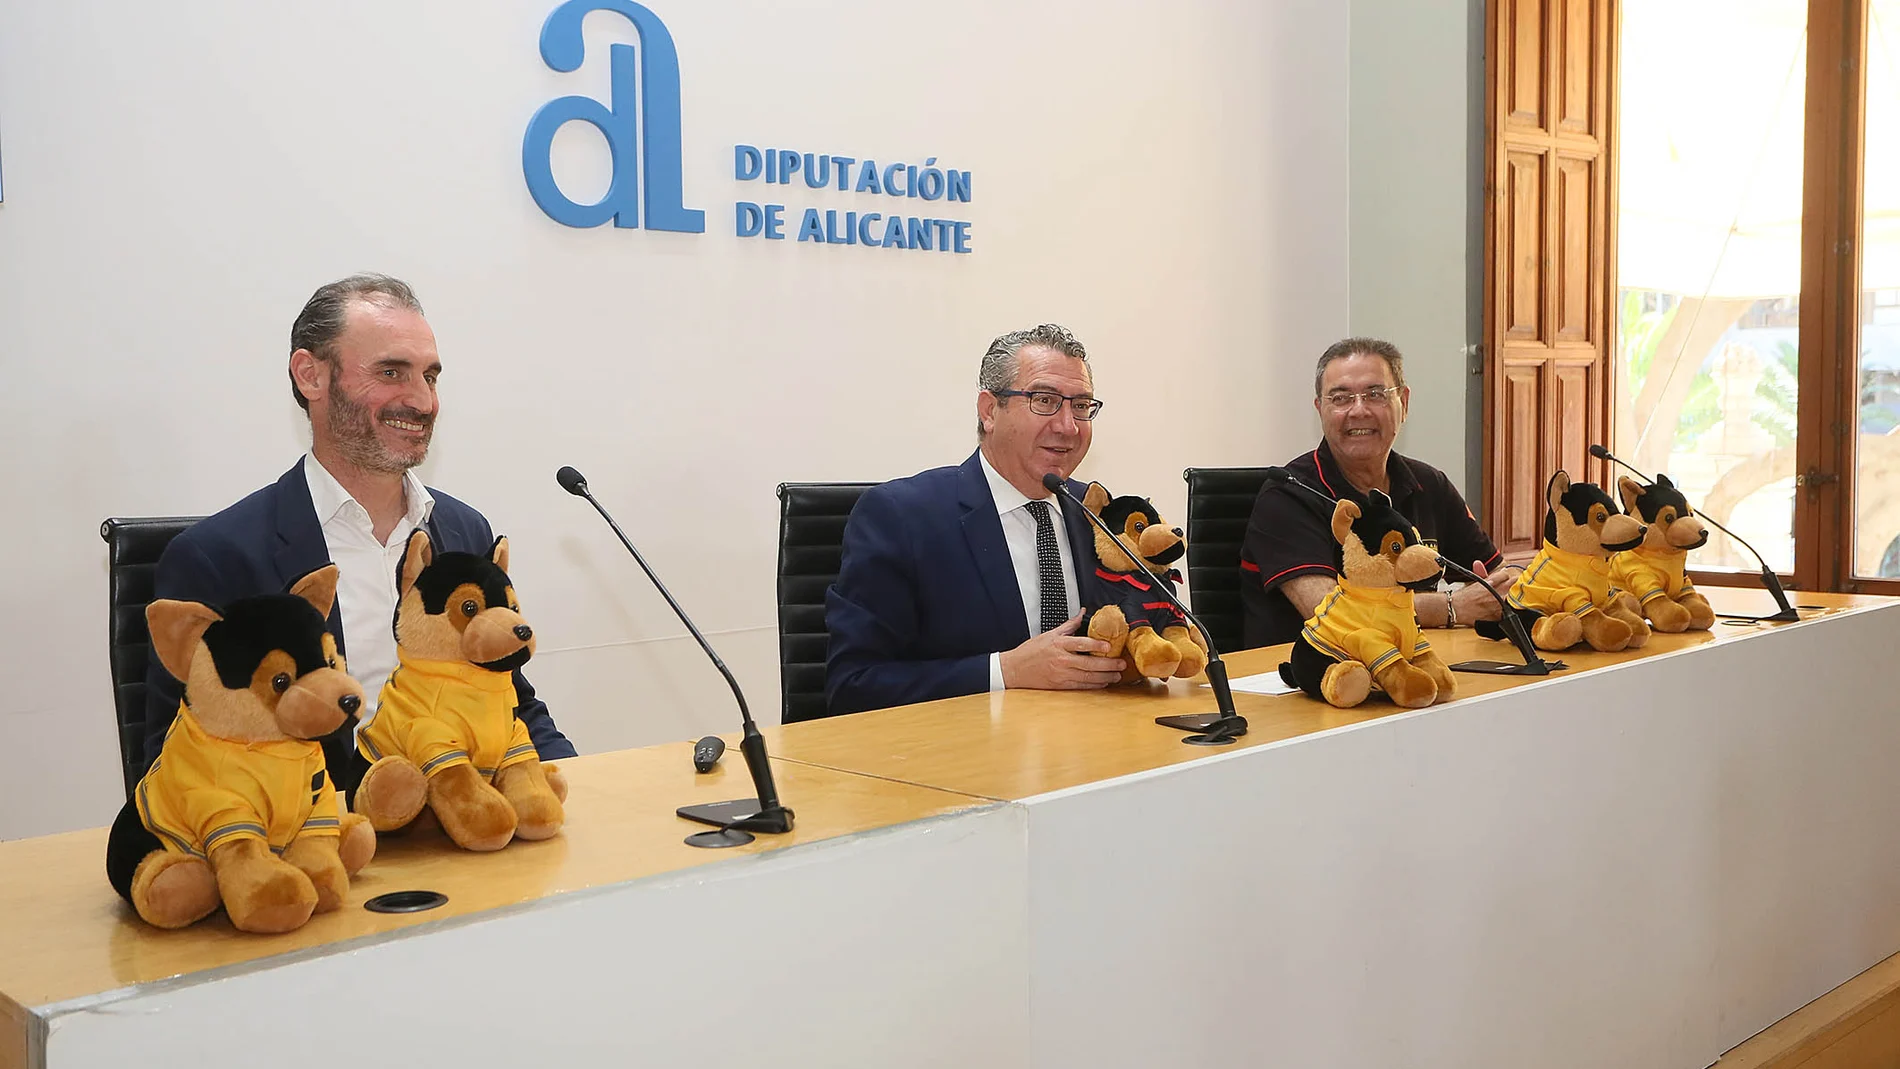 Hoy se ha presentado en la Diputación de Alicante el perrito de peluche, diseñado para atender a los niños víctimas de accidentes.